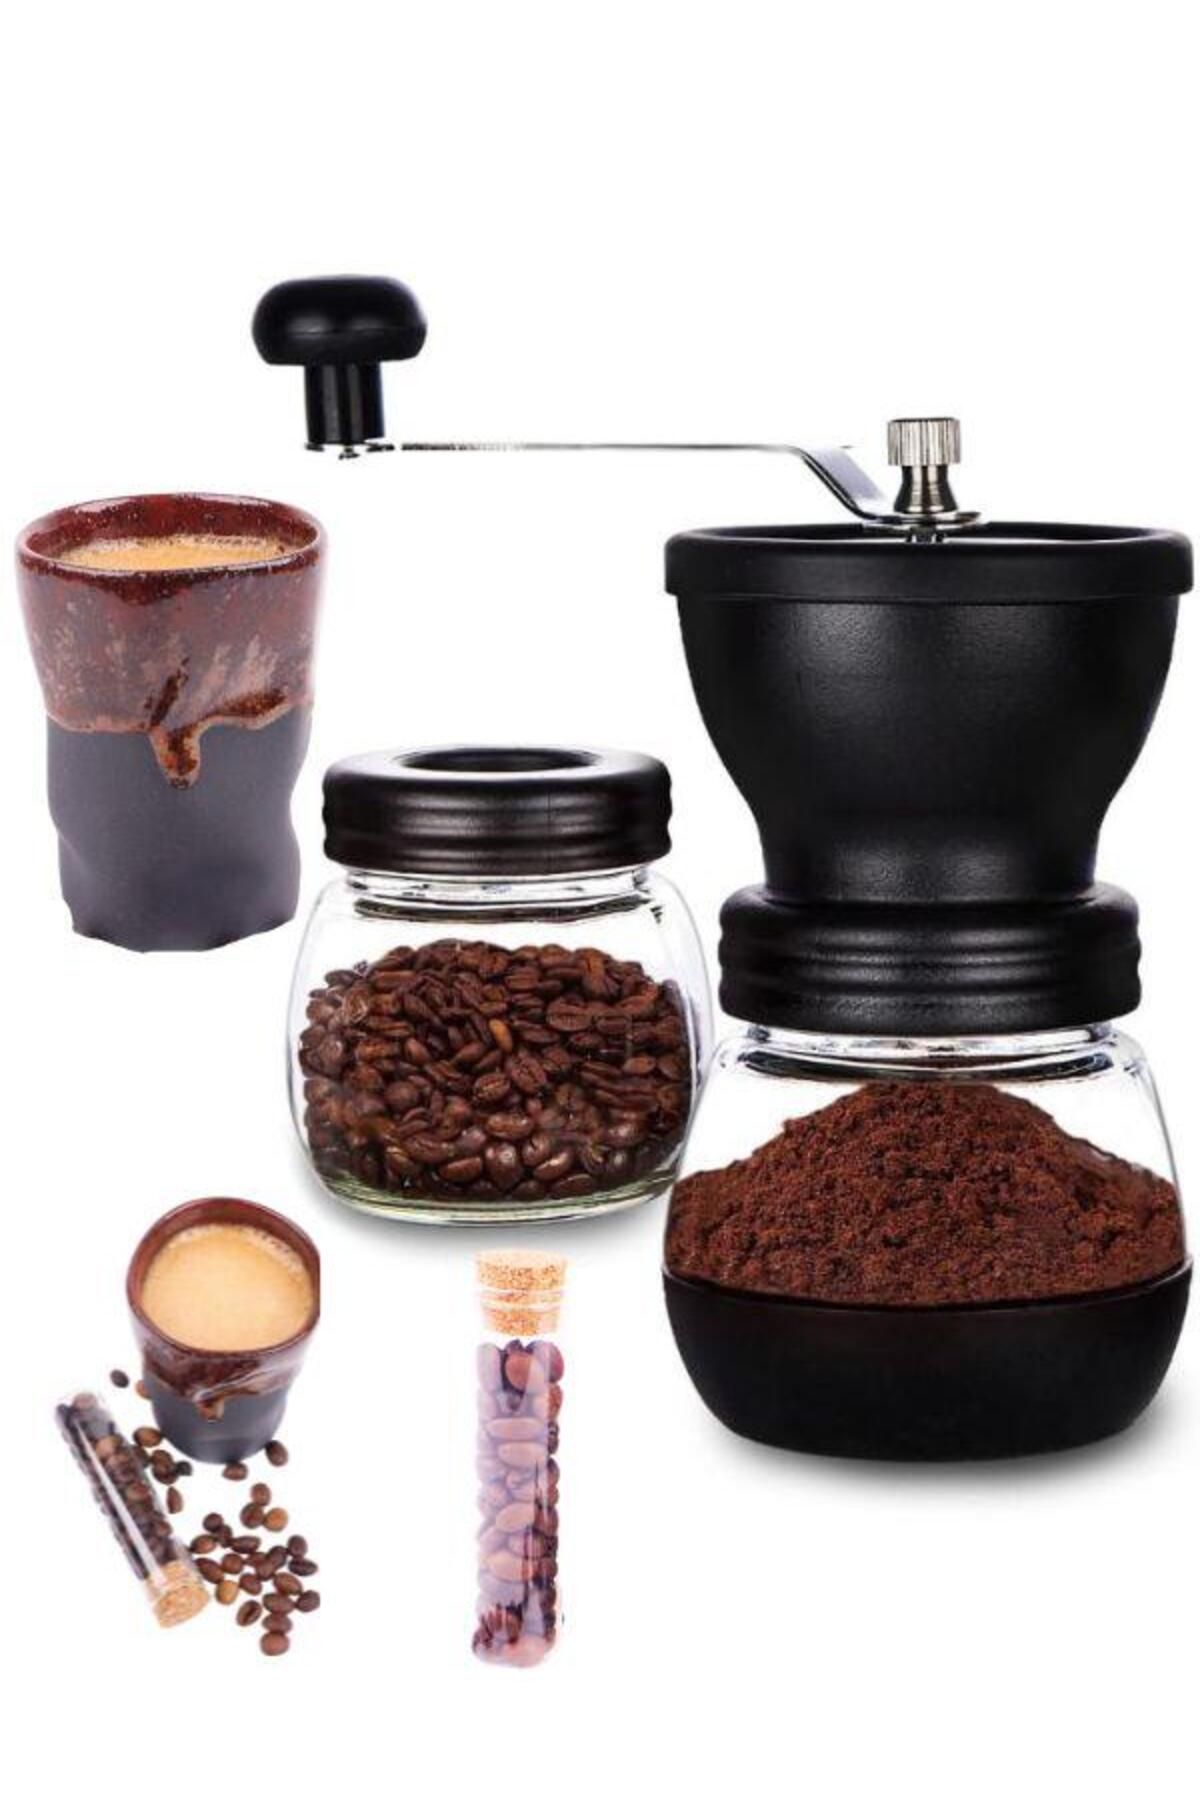 PERLOTUS Seramik Öğütücülü El Tipi Çevirmeli Kahve Değirmeni ve Espresso Fincanı Seti (Kahve Hediyeli)